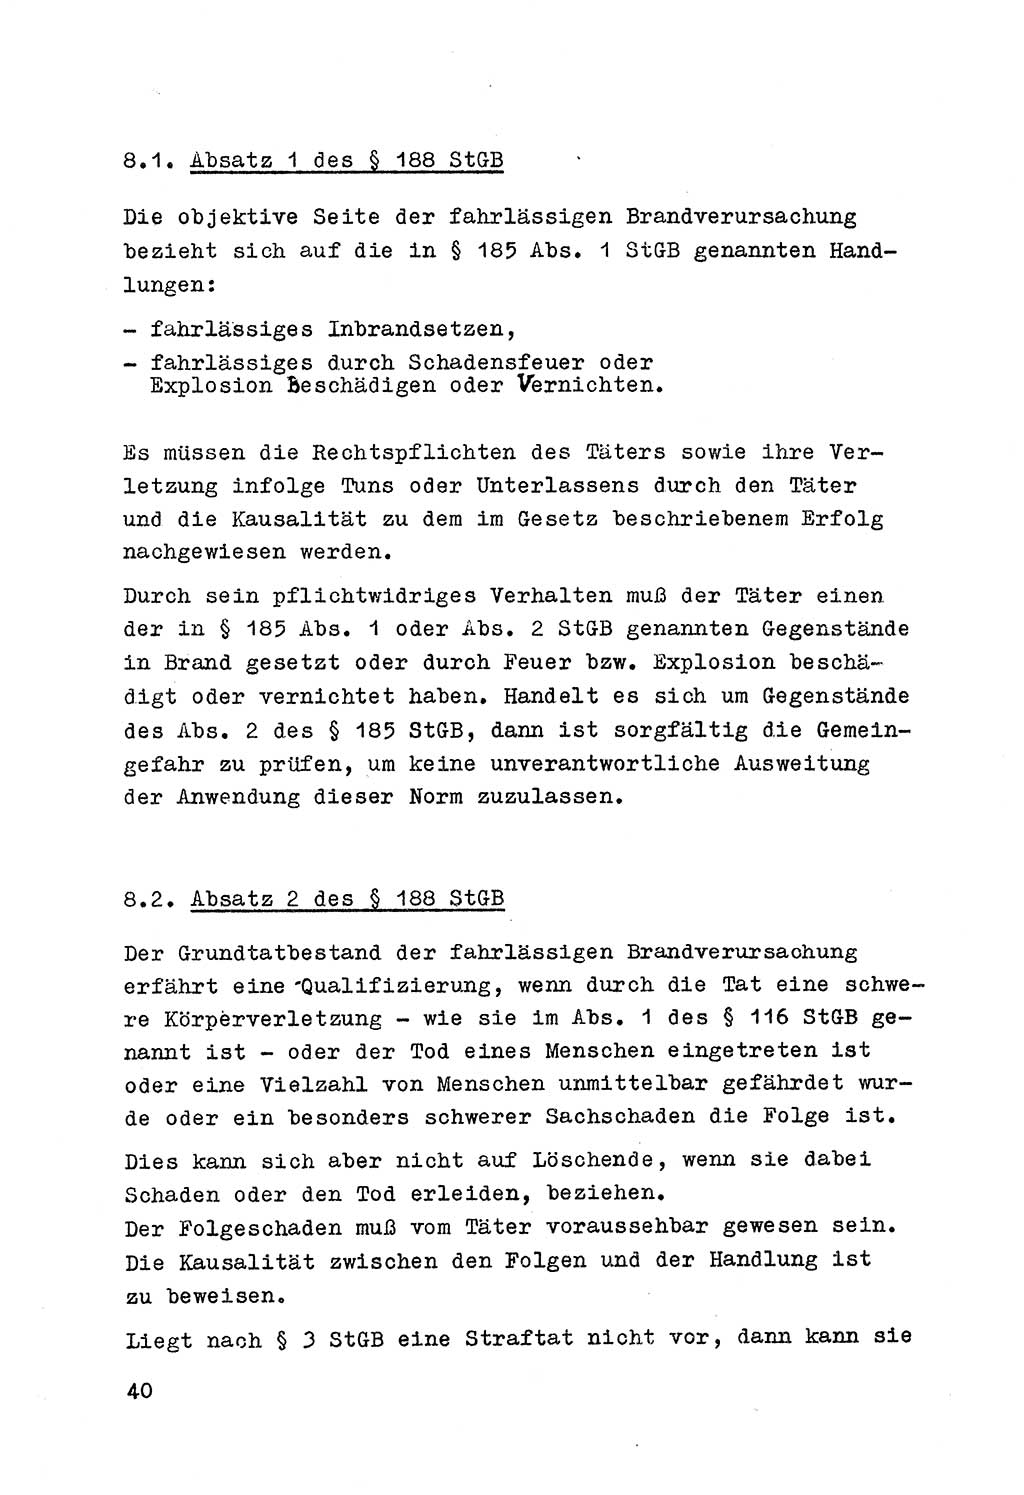 Strafrecht der DDR (Deutsche Demokratische Republik), Besonderer Teil, Lehrmaterial, Heft 7 1970, Seite 40 (Strafr. DDR BT Lehrmat. H. 7 1970, S. 40)